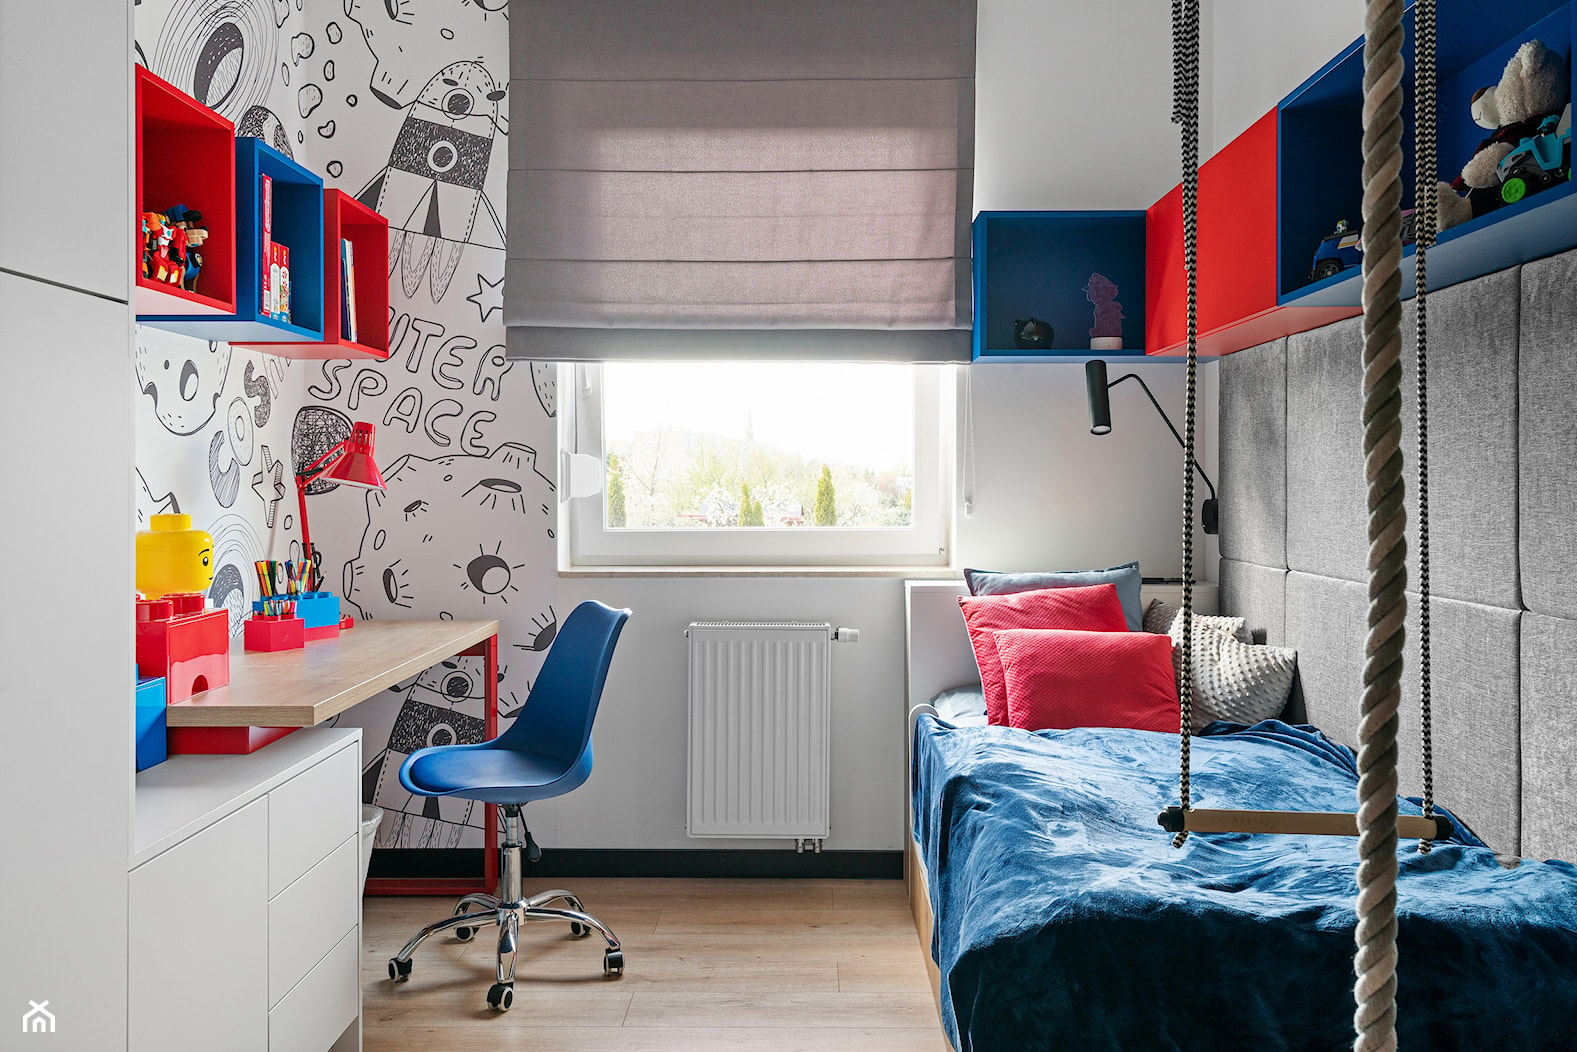 Realizacja loftowego mieszkania M01_2022 Bielawa - Pokój dziecka, styl industrialny - zdjęcie od Aretzky Design - Homebook